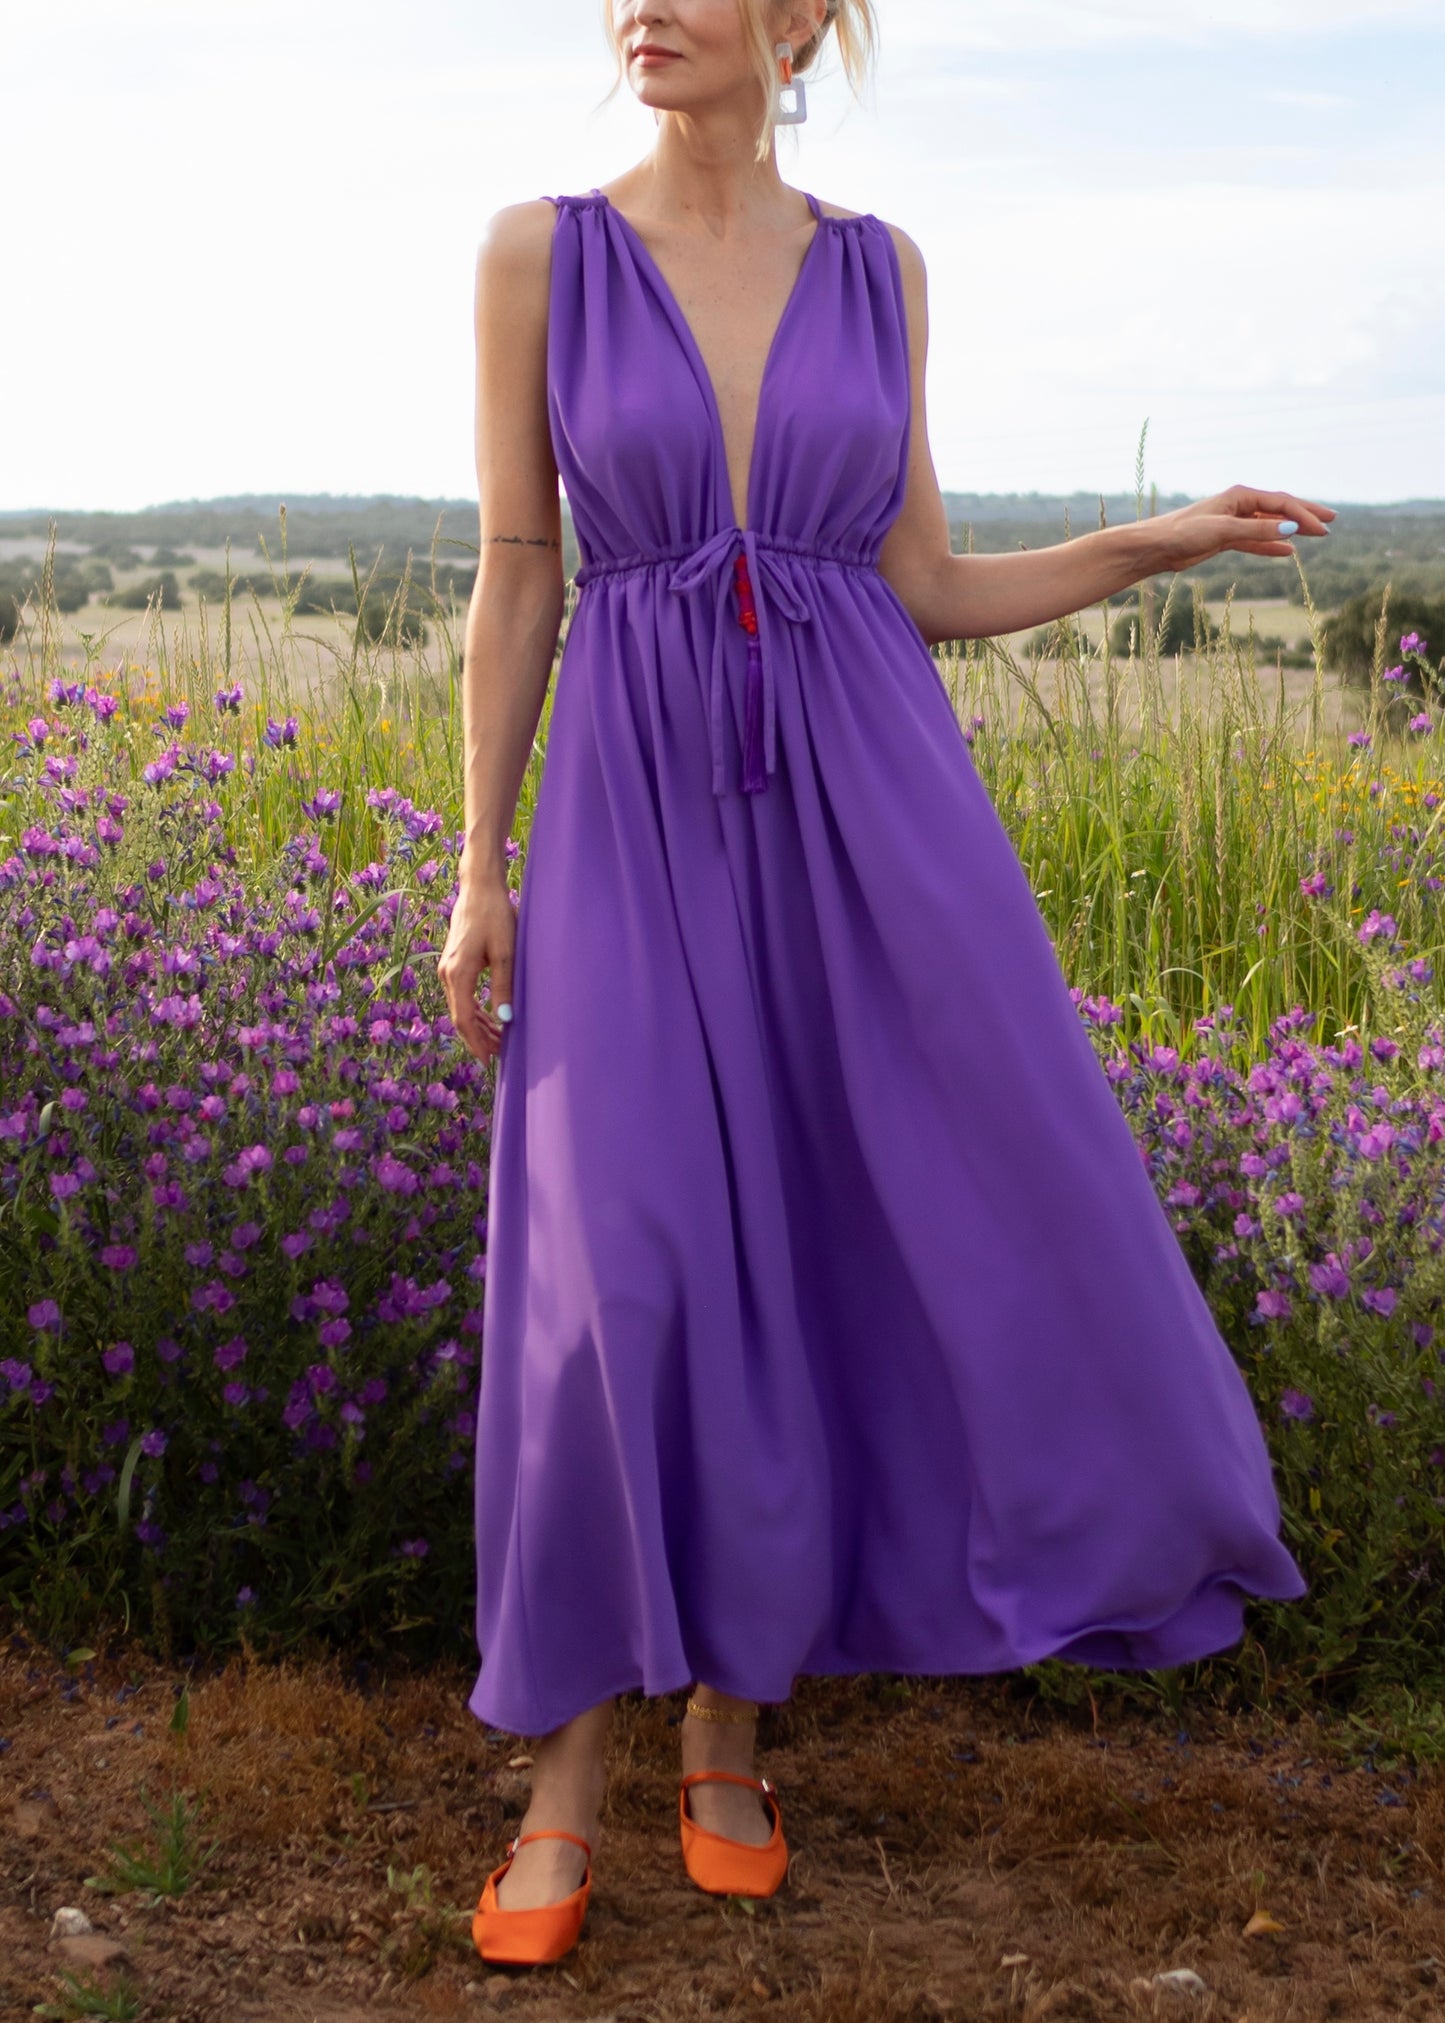 Saturday Purple Dress